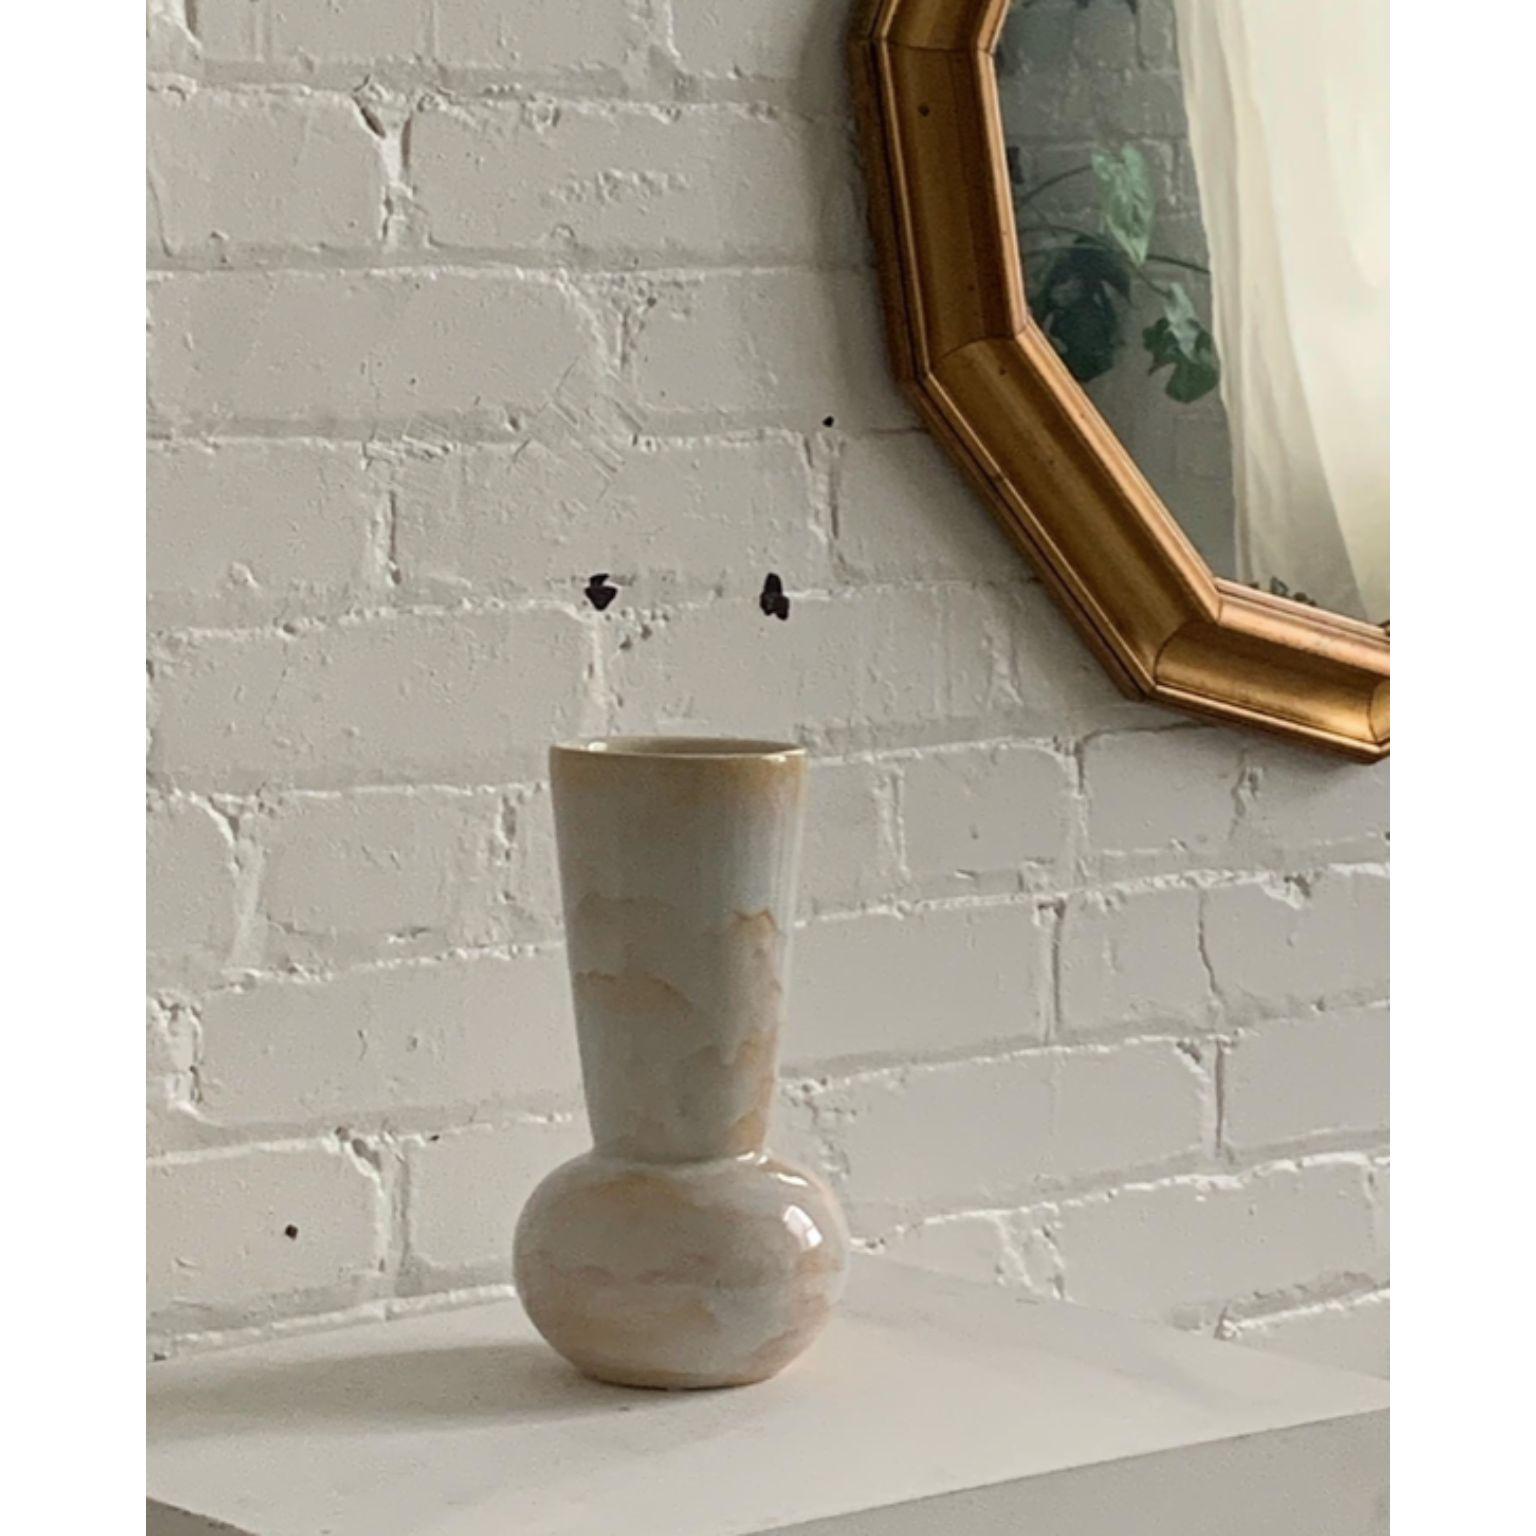 Vase à nuages de Solem Ceramics
Dimensions : D 13 x L 13 x H 33 cm.
Matériaux : Grès blanc, glaçure
Ce vase est sans danger pour l'eau. Veuillez nous contacter.

L'œuvre de Solem puise dans les souvenirs de l'architecture et de la communauté de